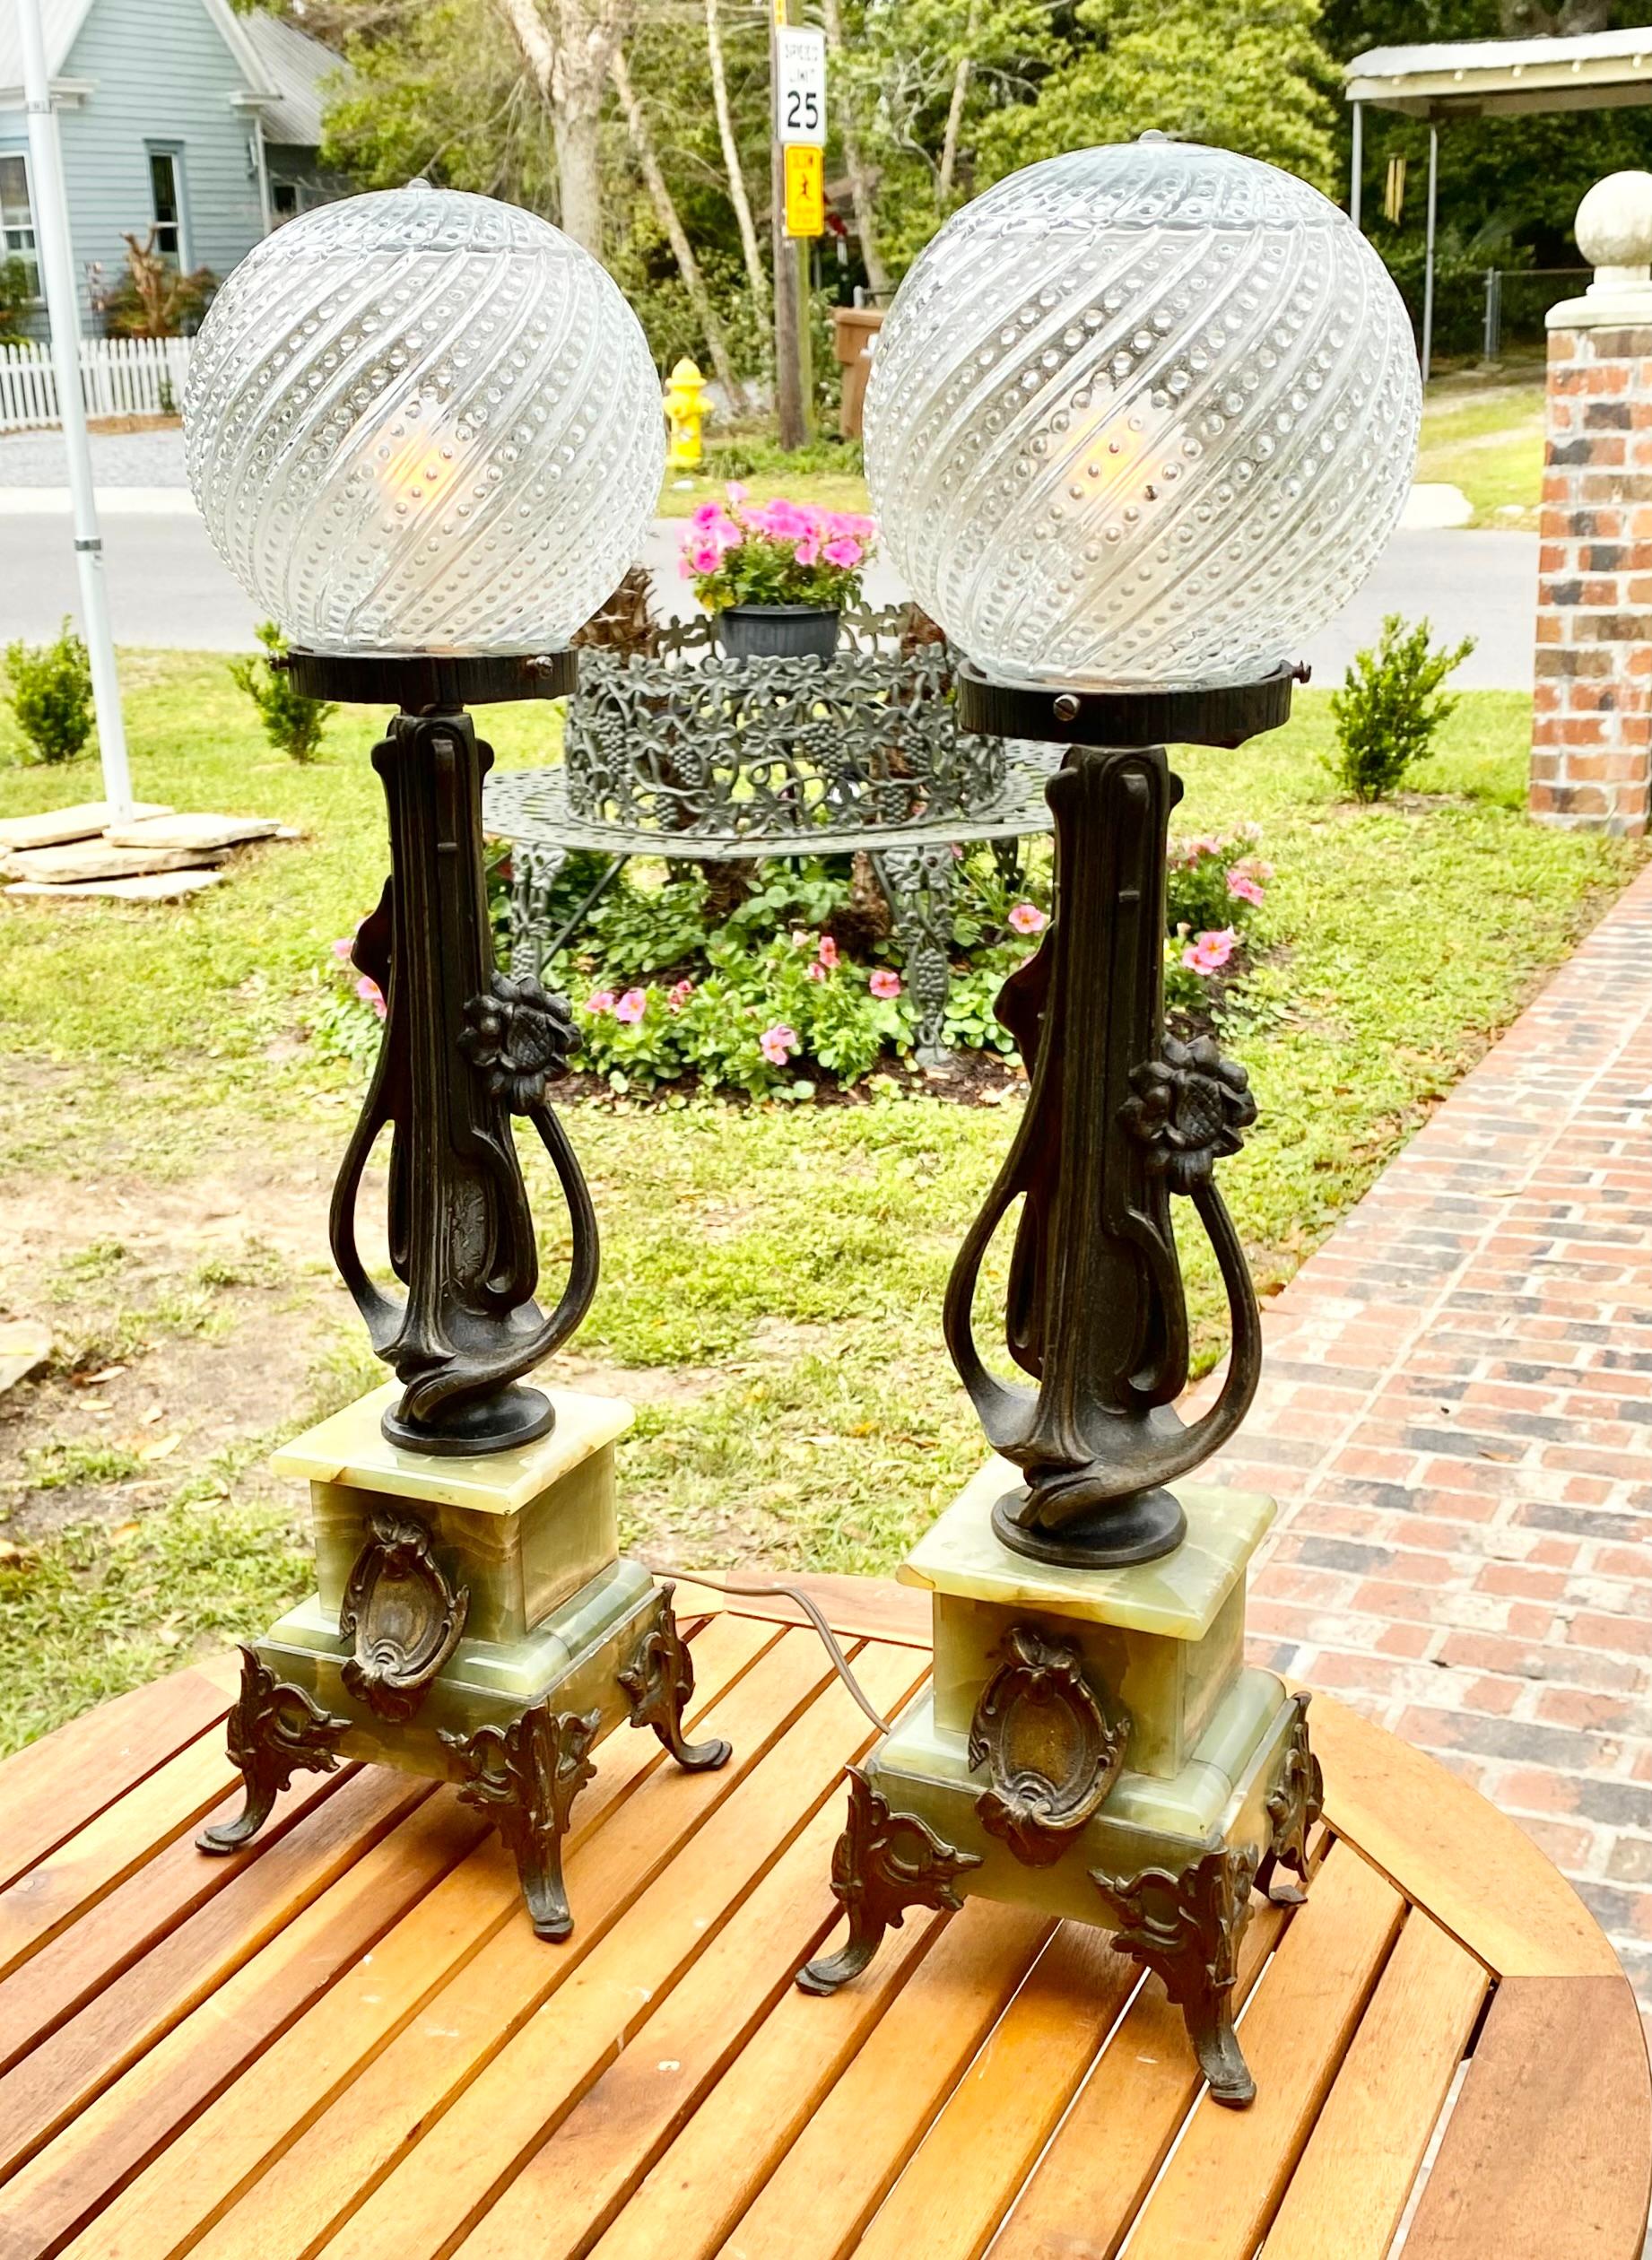 Paar französische Jugendstil-Tischlampen aus patiniertem Zinn und Onyx, 19. Jh., früher Öllampen, mit runden, mundgeblasenen Glasschirmen auf einem Jugendstilträger aus Zinn und einem abgestuften Sockel aus grünem Onyx, auf gespreizten